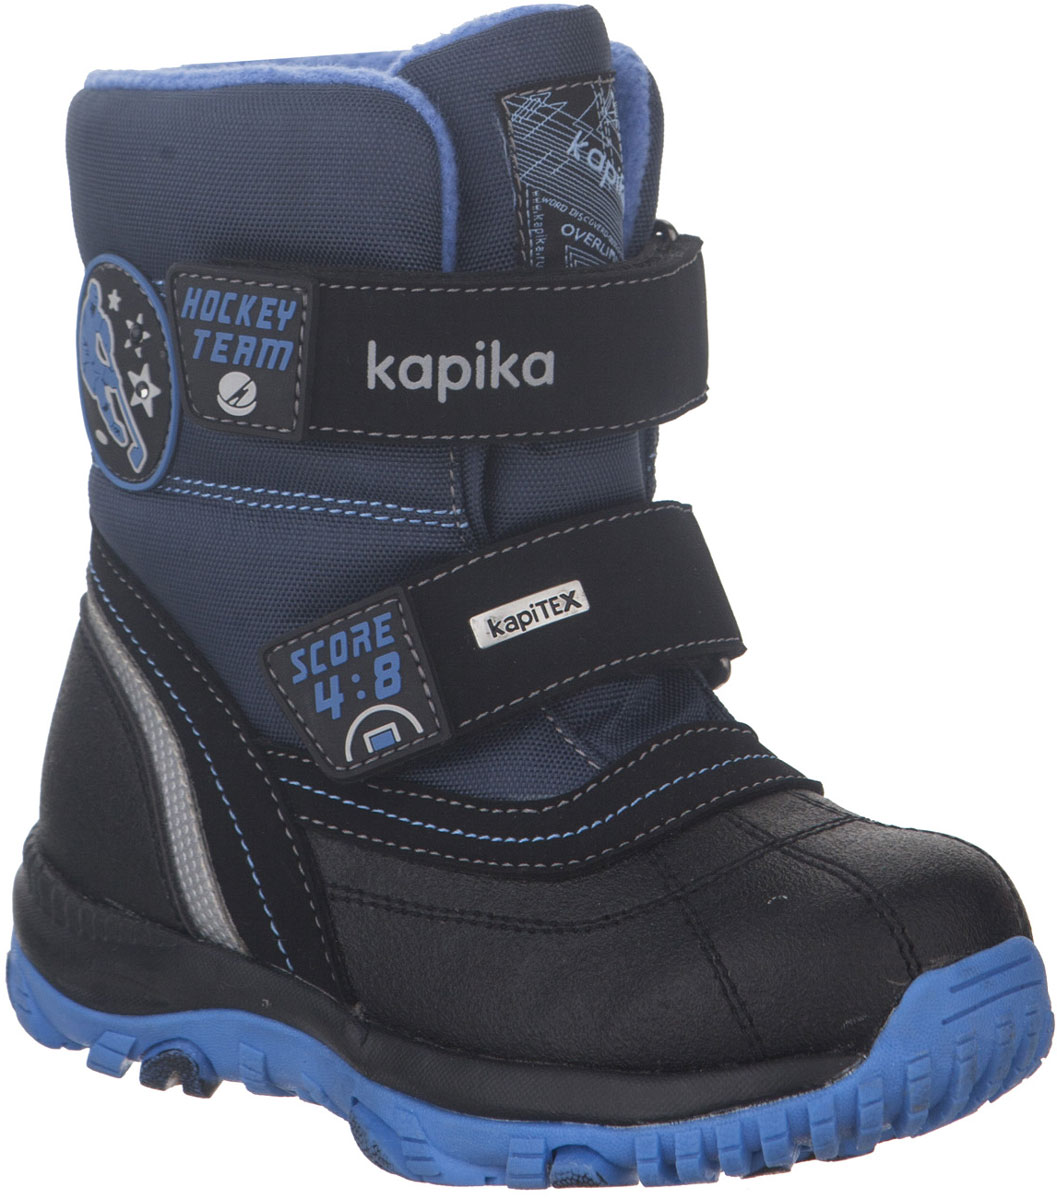 Ботинки для мальчика Kapika, цвет: черный, синий. 42217-1. Размер 31